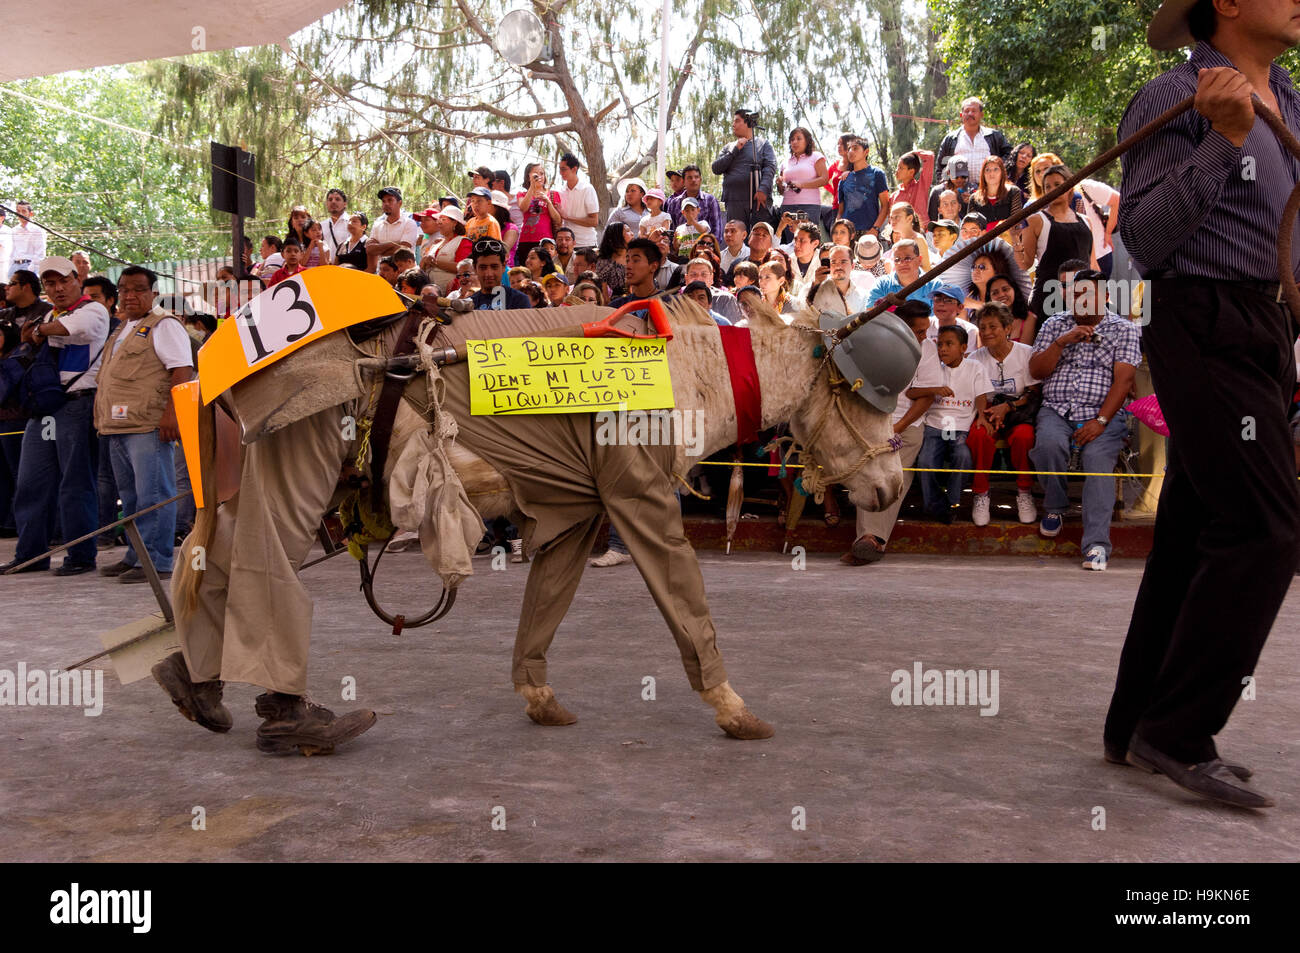 Concours au cours de l'âne vêtu juste d'Âne (Feria del burro) à Otumba, Mexique Banque D'Images